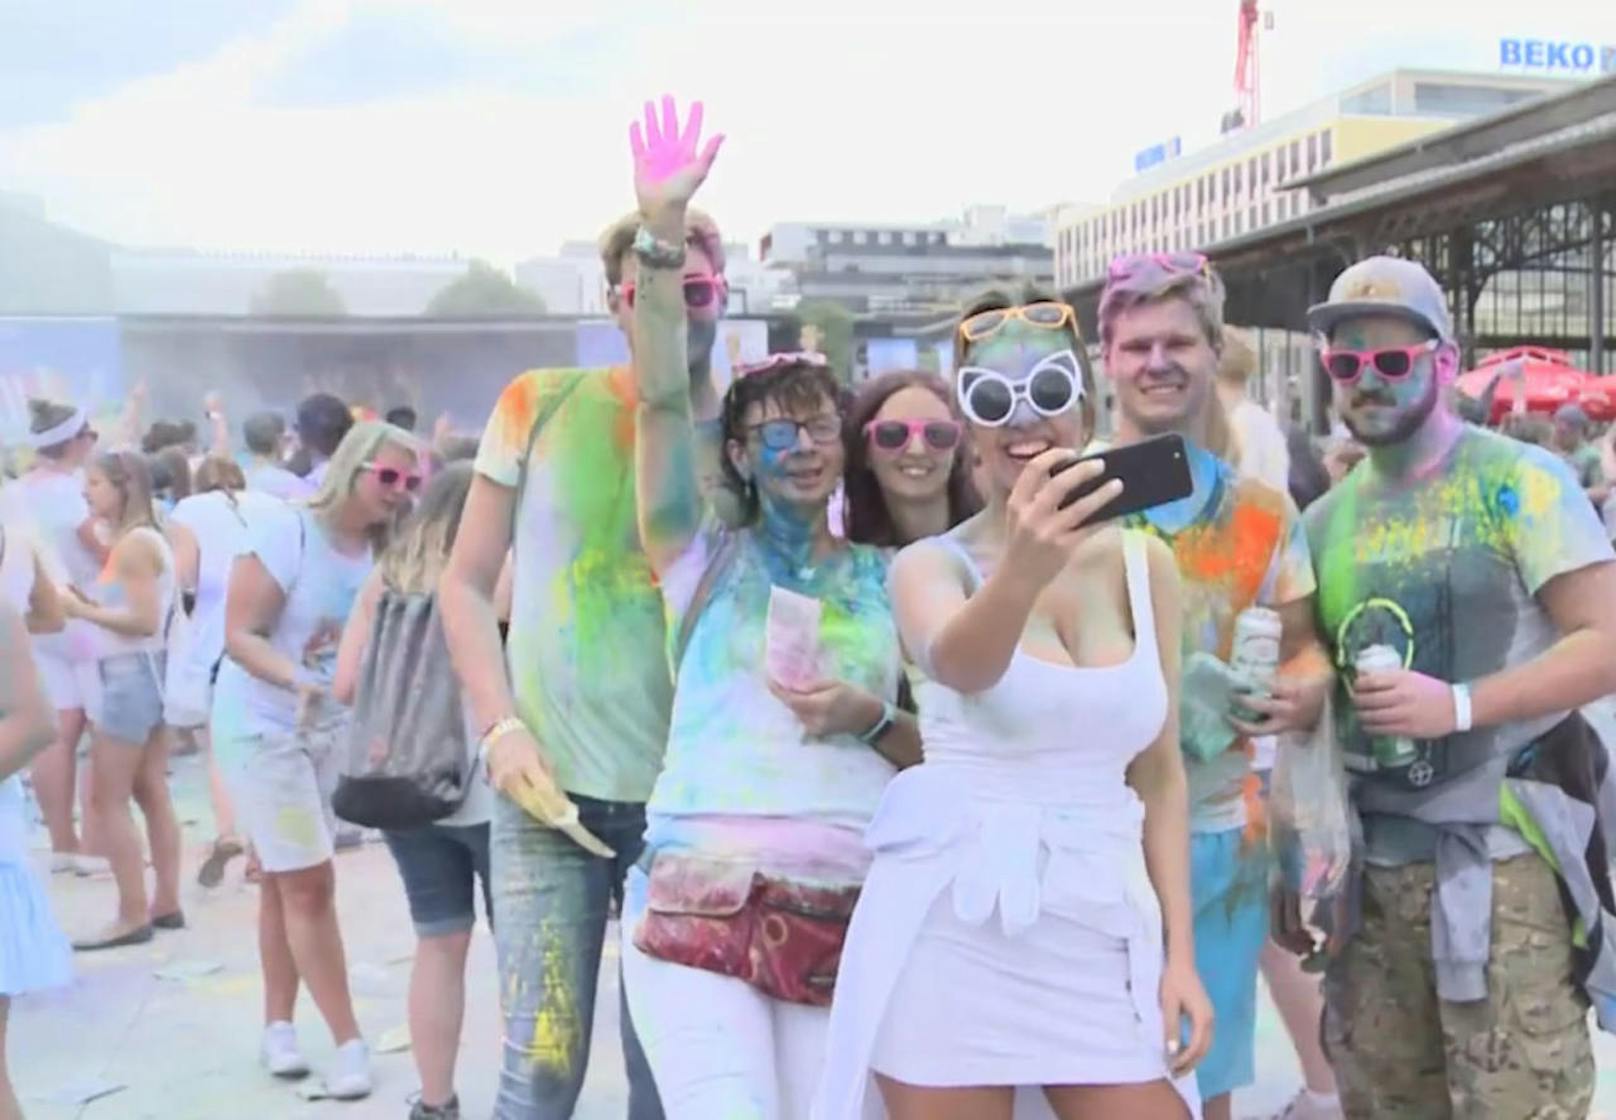 Ein rauschendes Farbenfest feierten Tausende bei "Holi" in Wien - mittendrin: Unsere Moderatorin Anna Chiara!